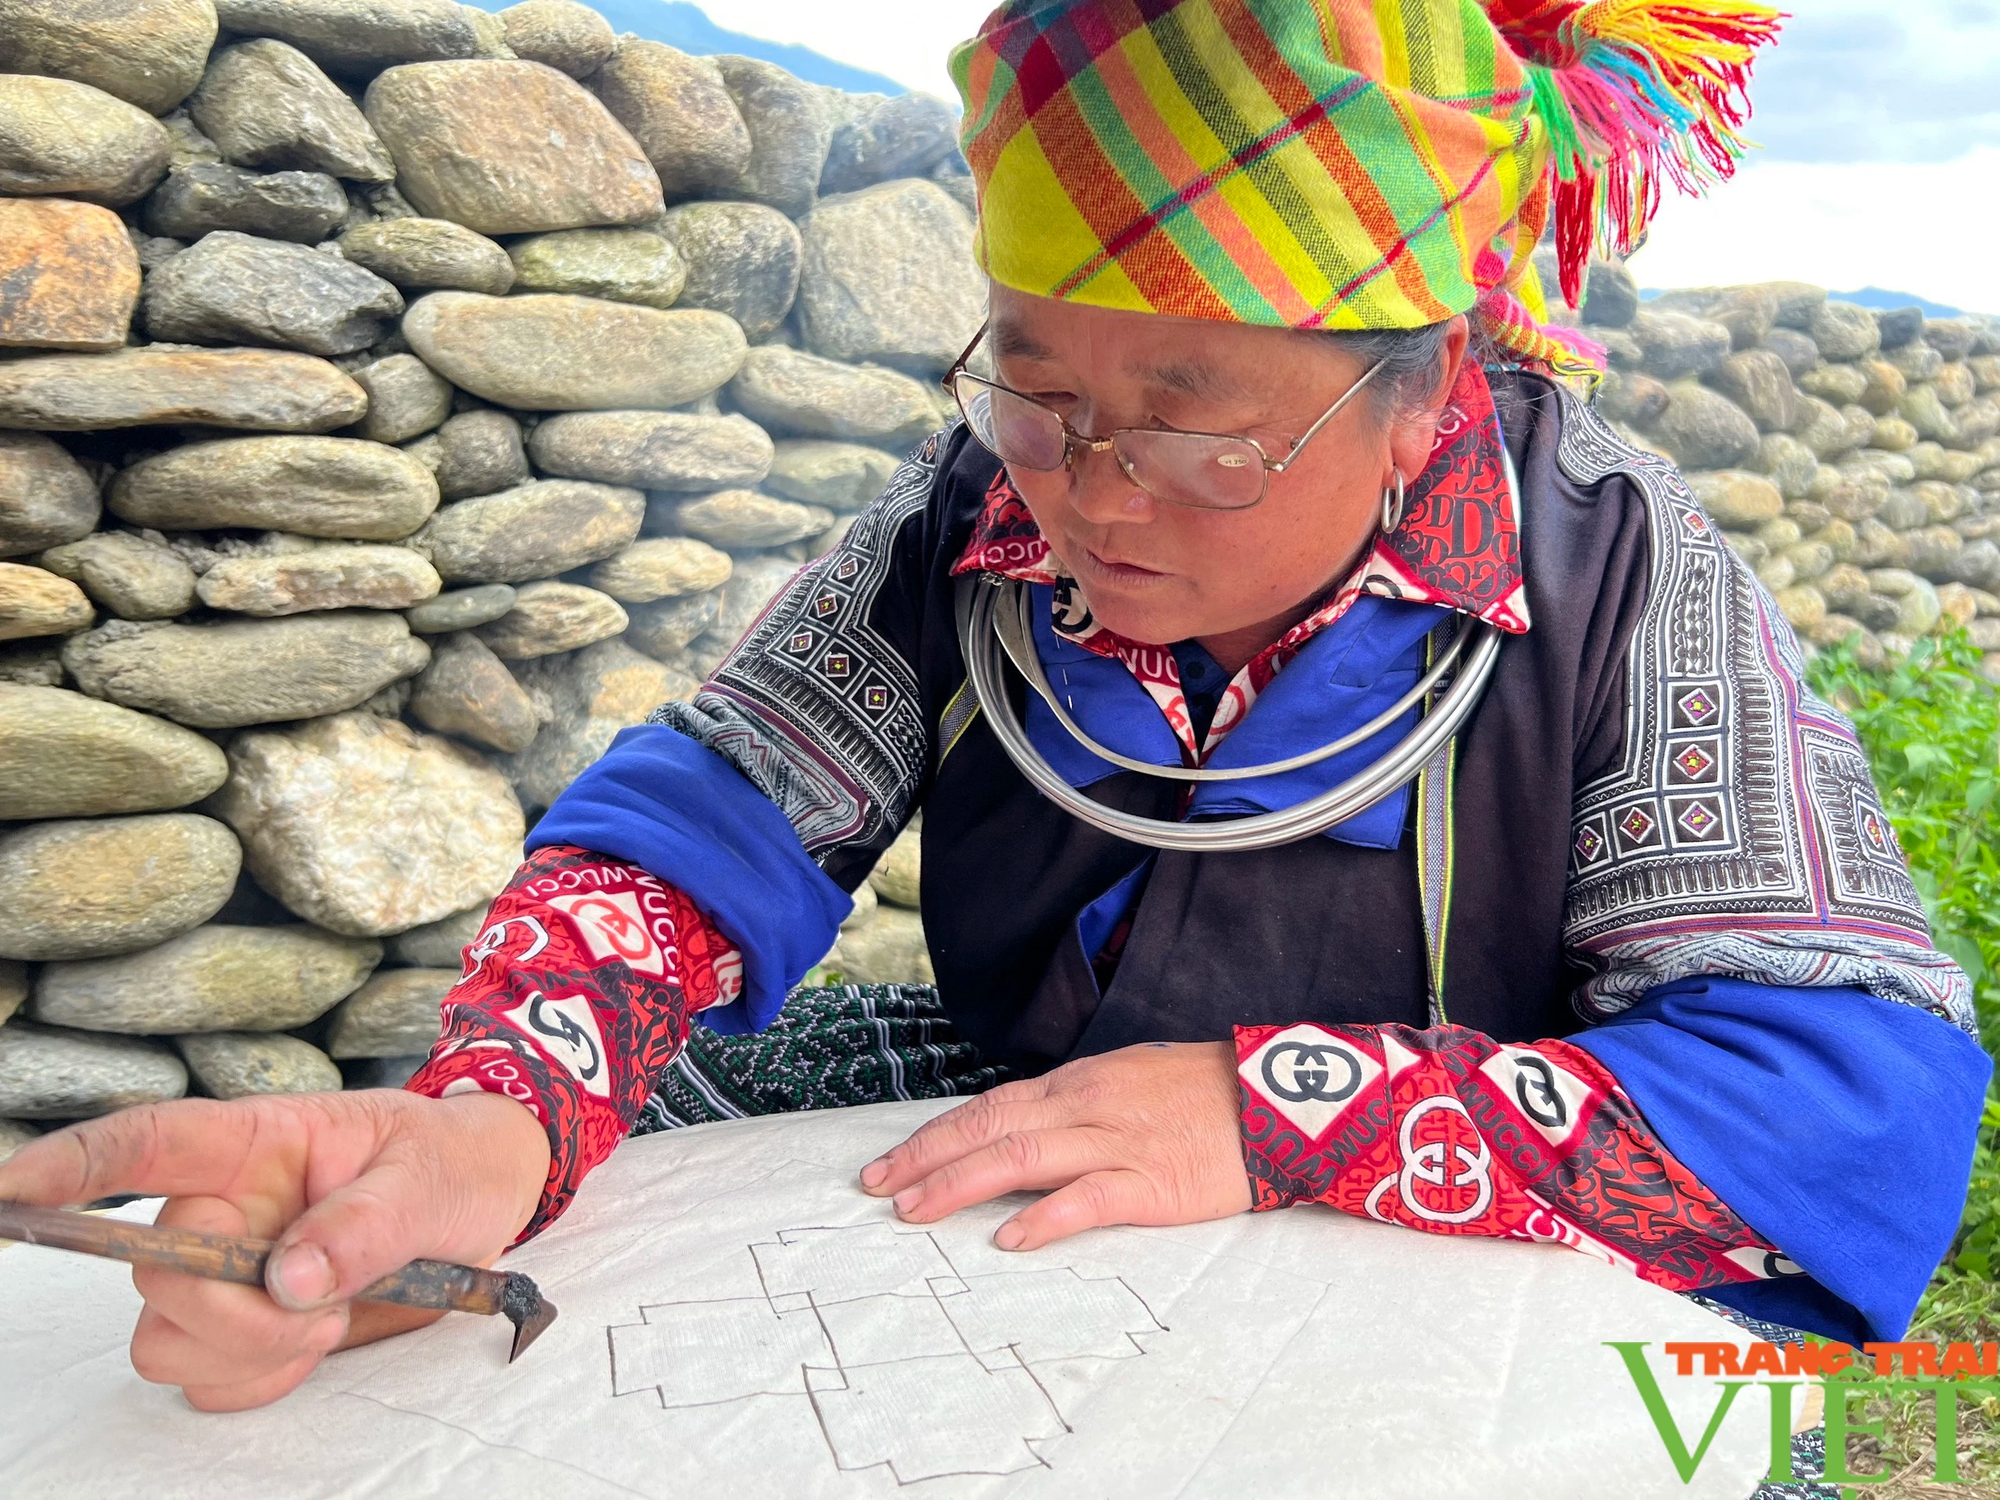 Nghệ thuật vẽ sáp ong trên vải của đồng bào dân tộc Mông - Ảnh 4.